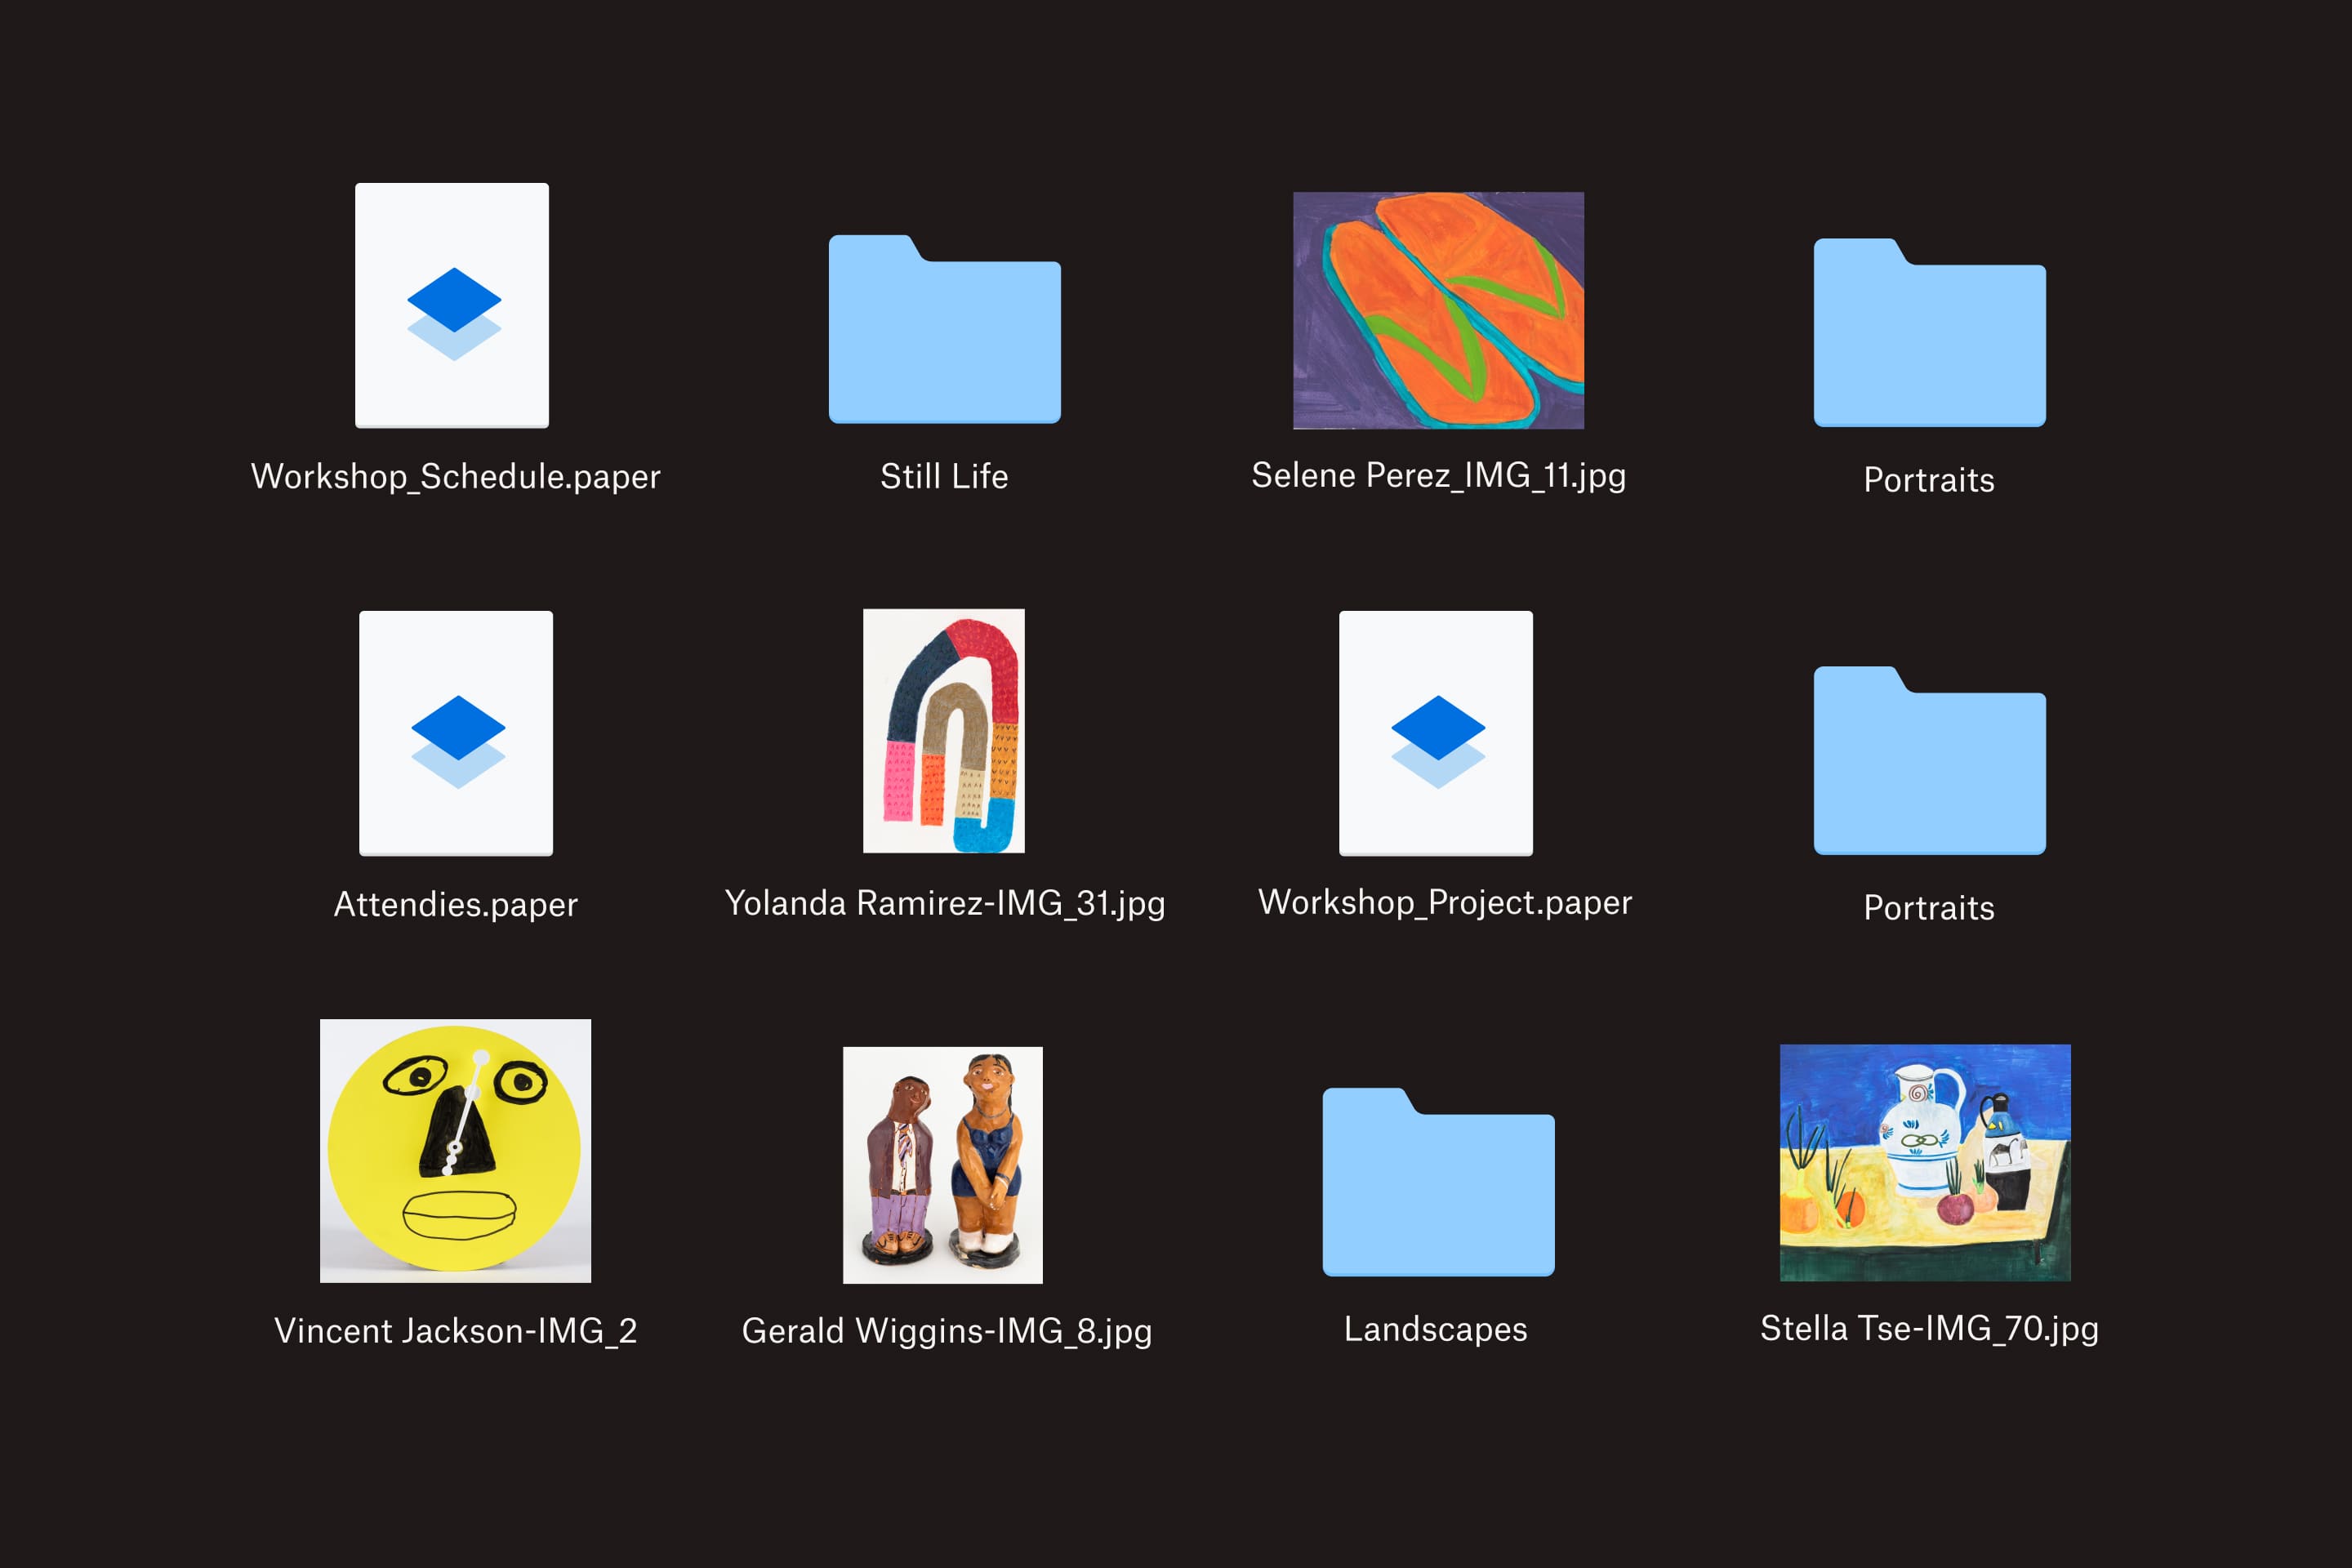 Dwanaście plików i folderów w usłudze Dropbox, które zawierają obrazy sztuki, szczegóły warsztatów i portrety.